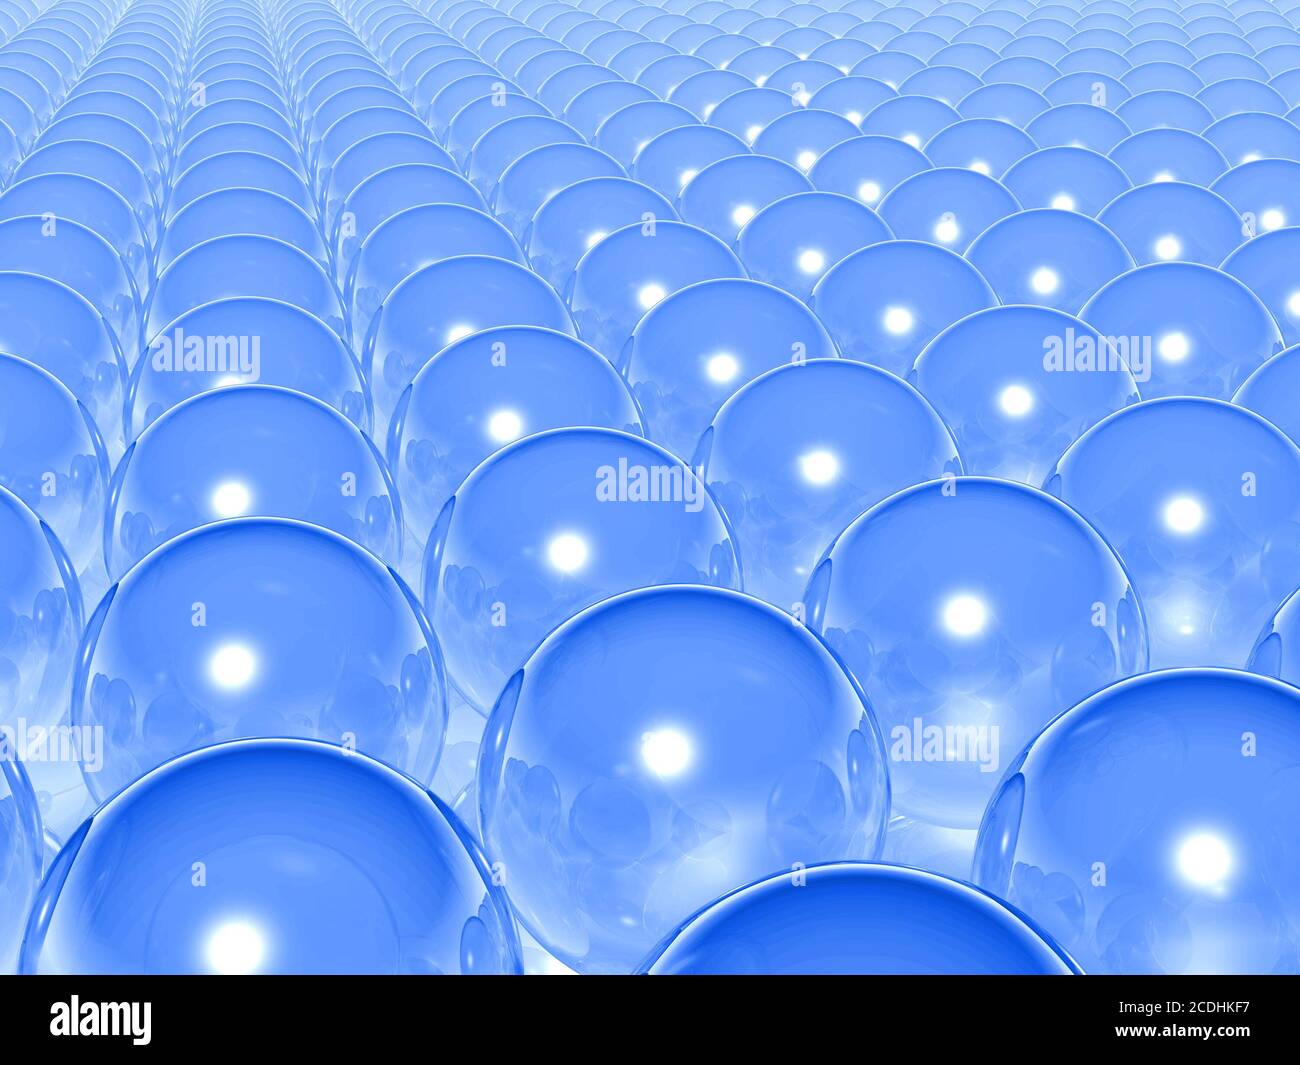 ballons transparents bleus abstraits et leurs réflecti Banque D'Images